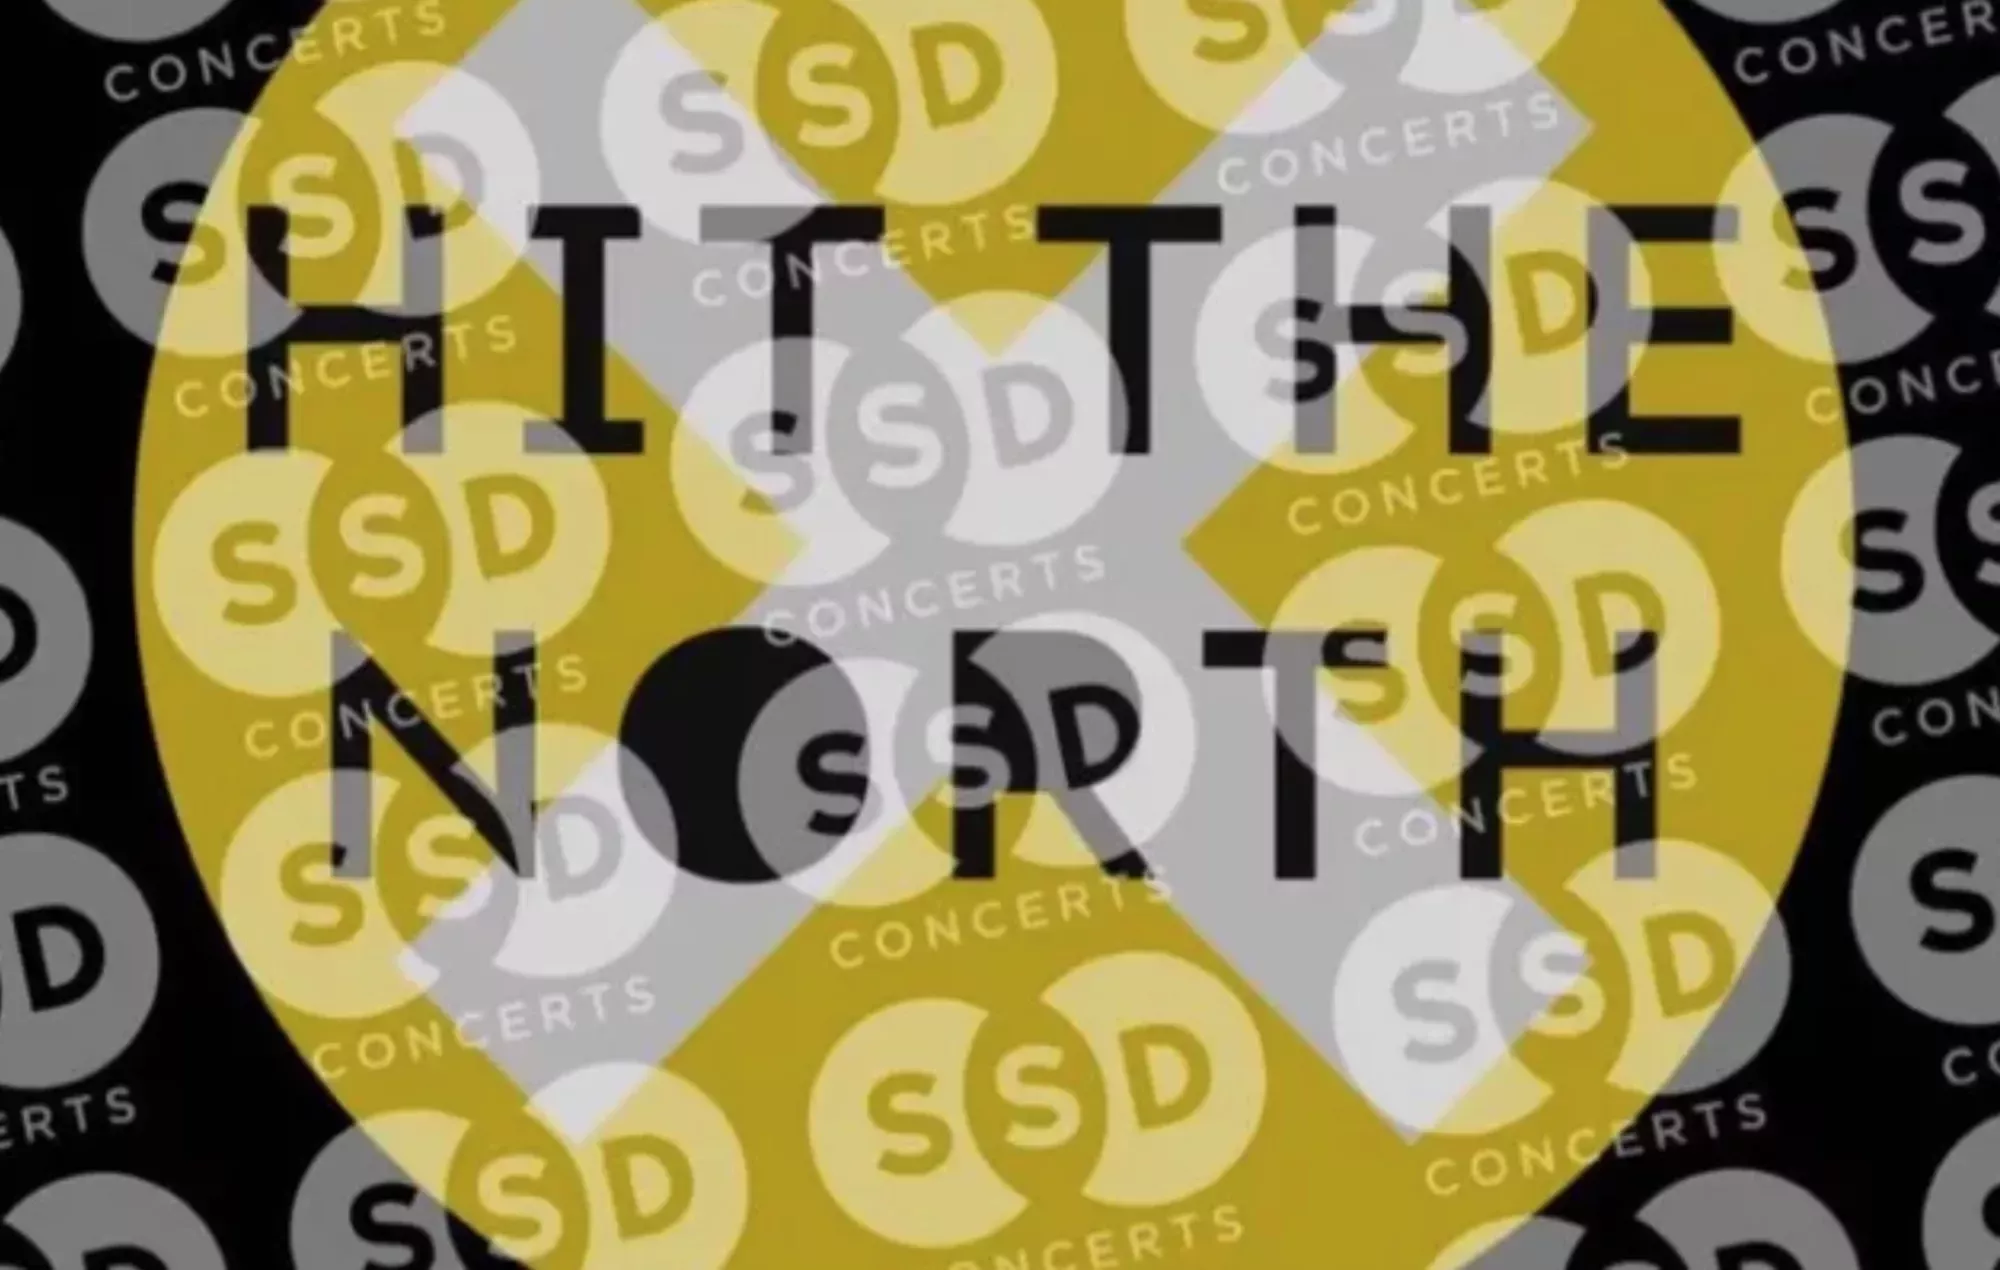 Se crea un crowdfunder para ayudar a los artistas que se retiraron de Hit The North por las acusaciones de SSD Concerts